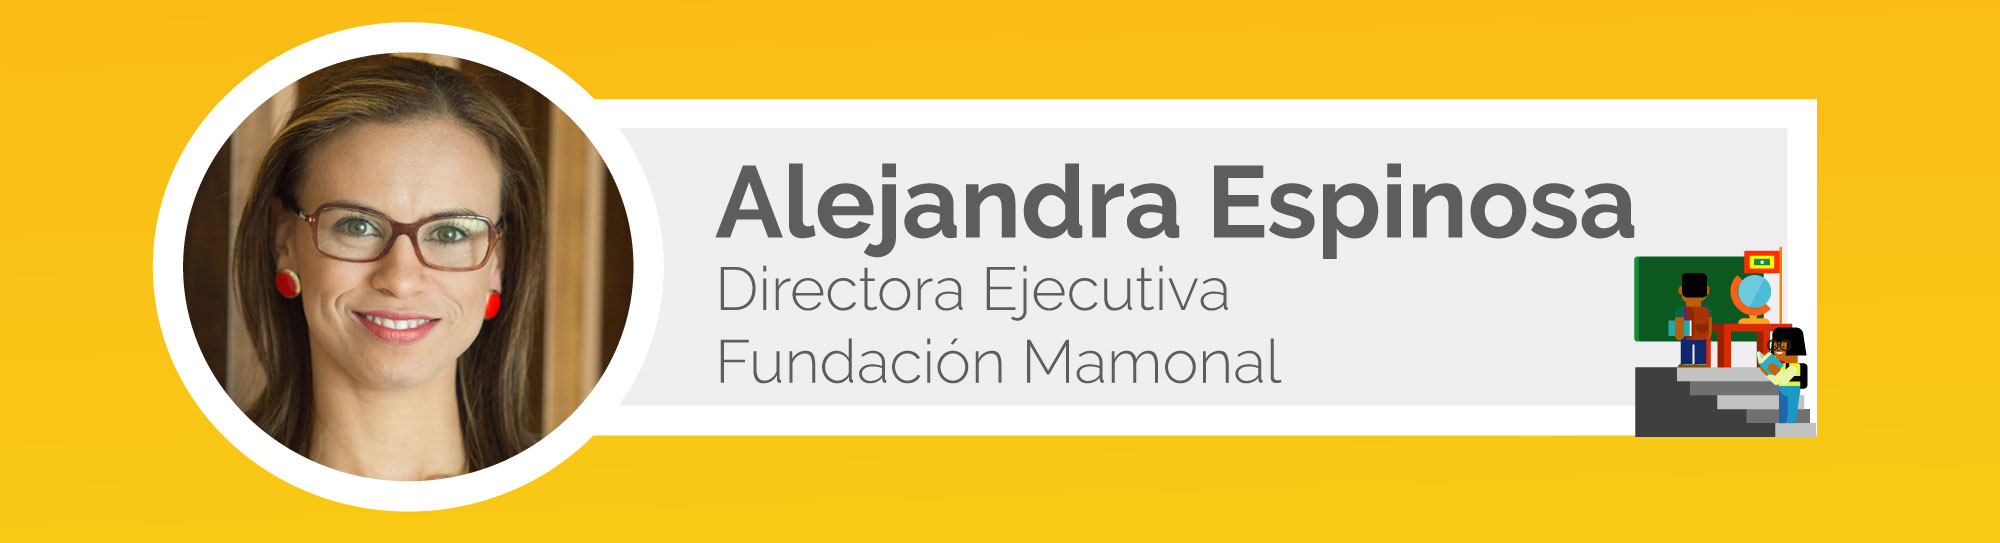 Alejandra-espinosa-Fundación-Mamonal